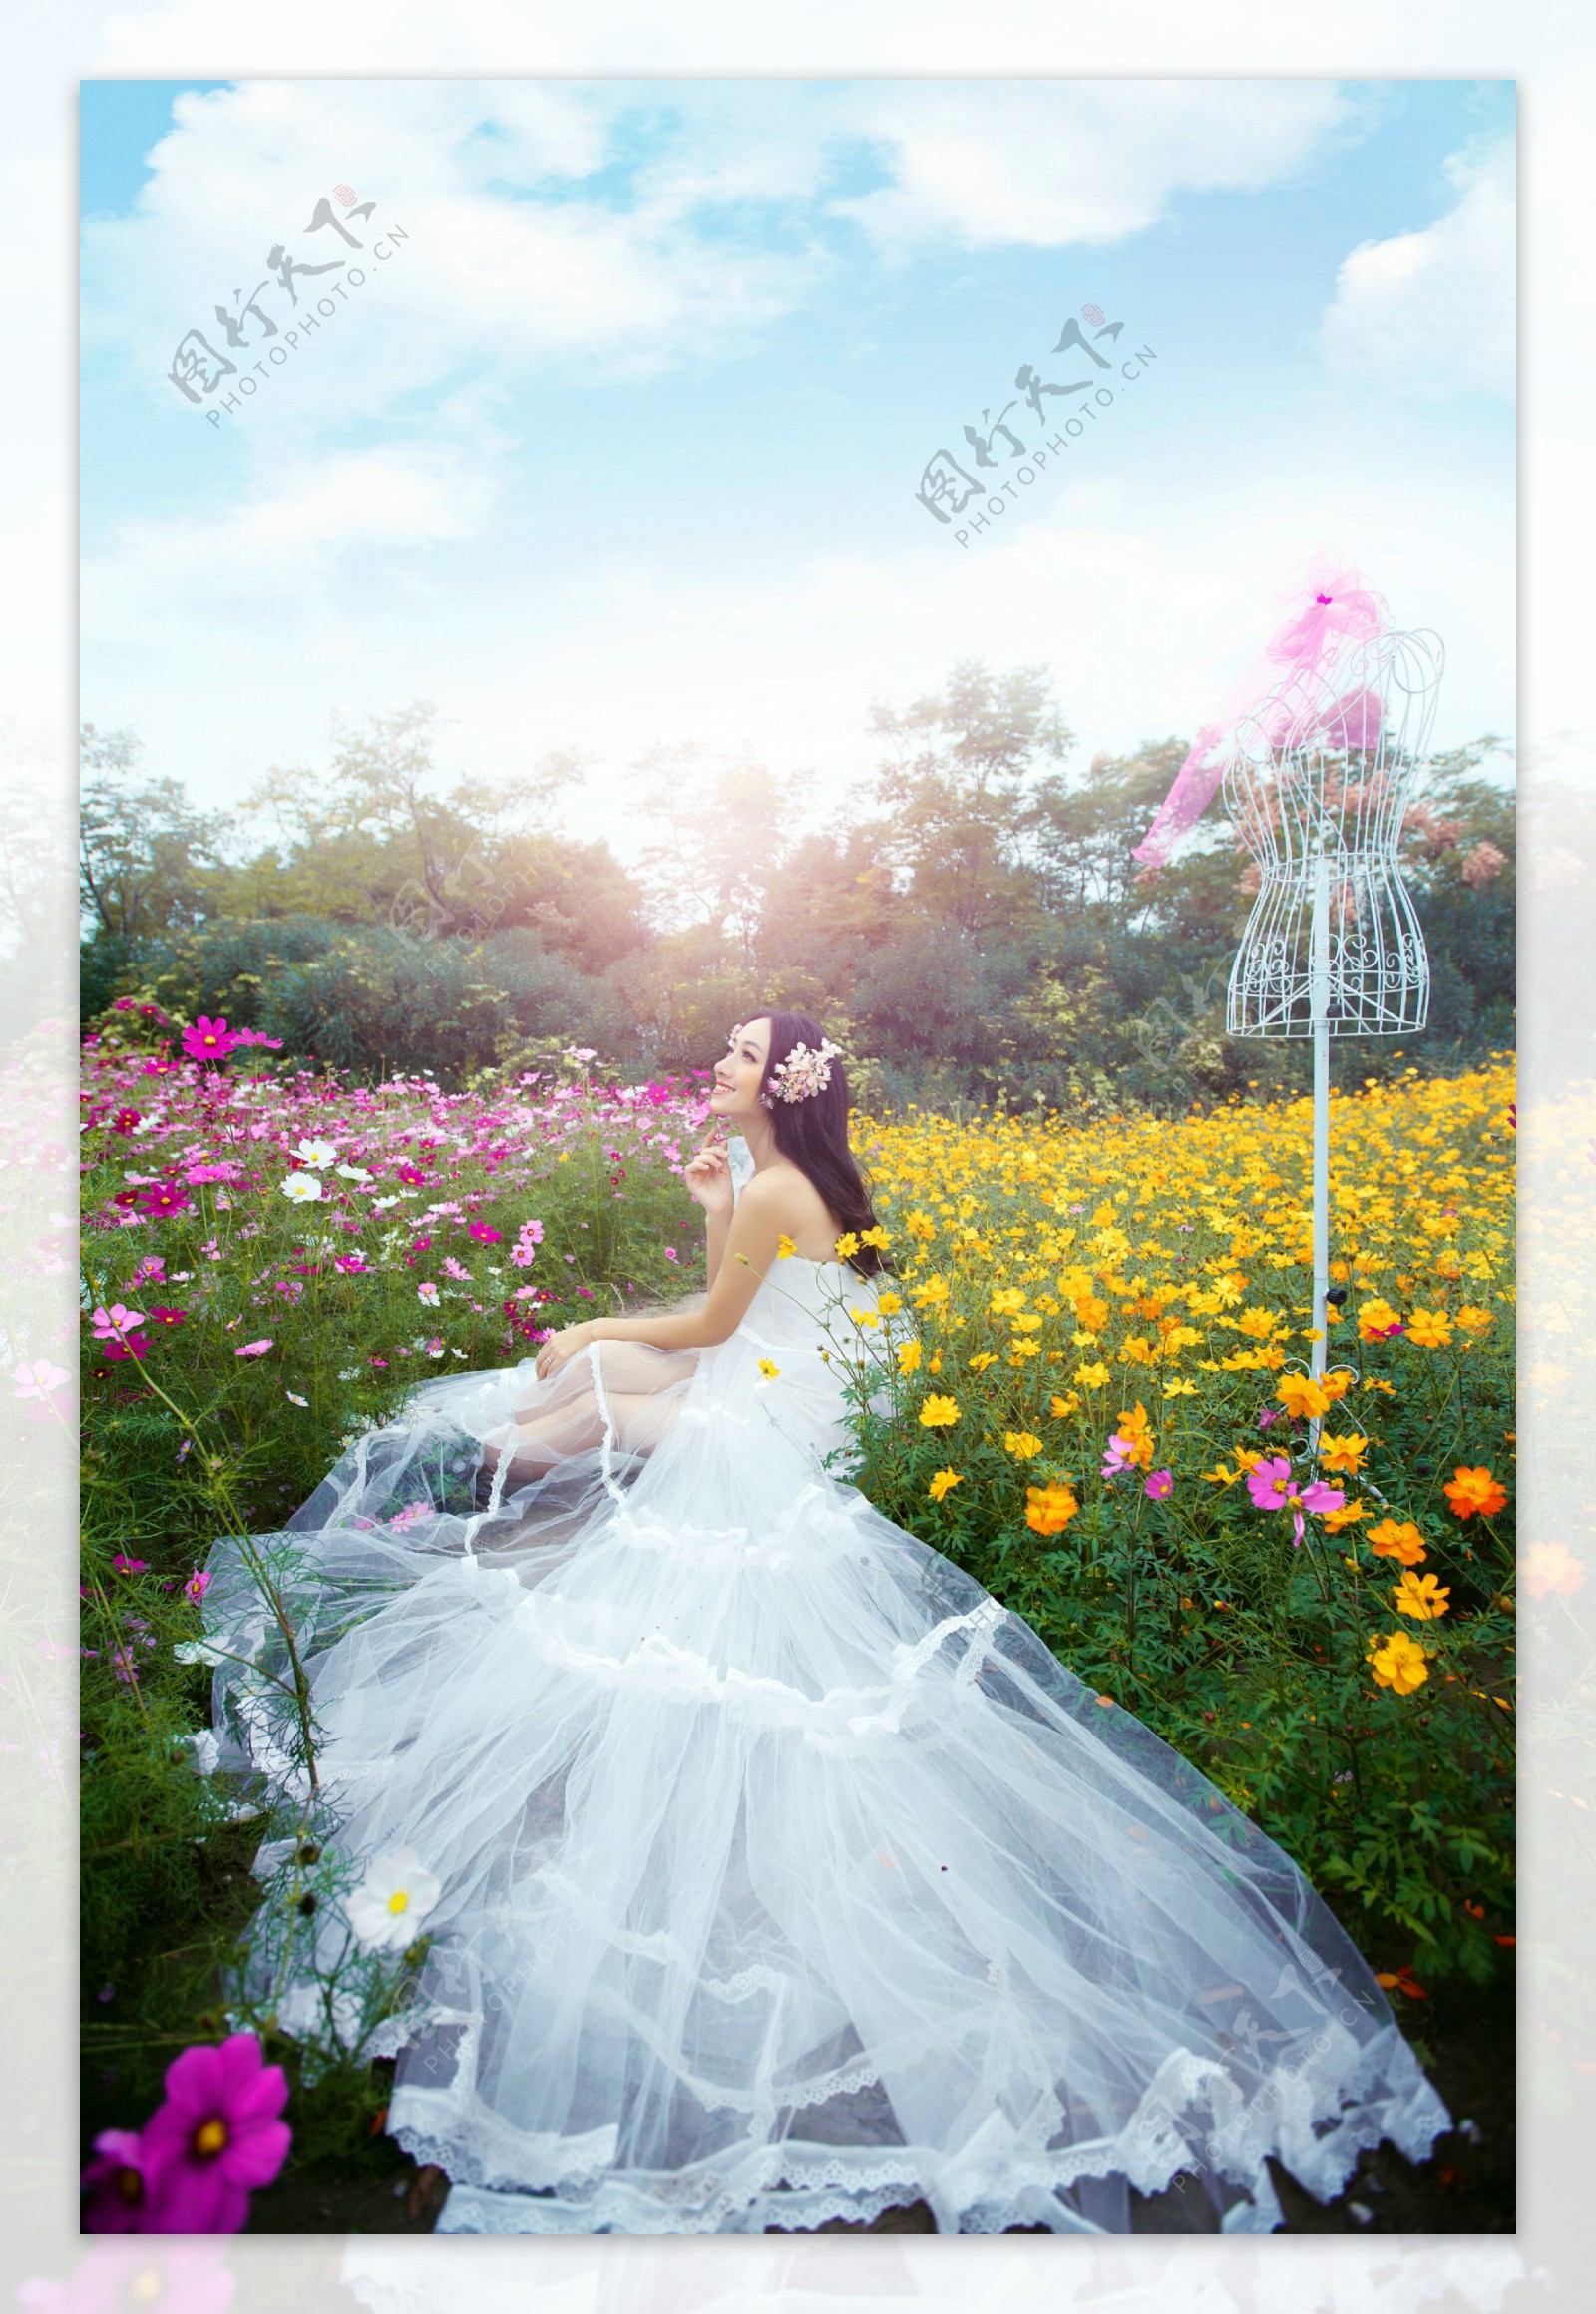 坐在花丛里的美丽新娘图片